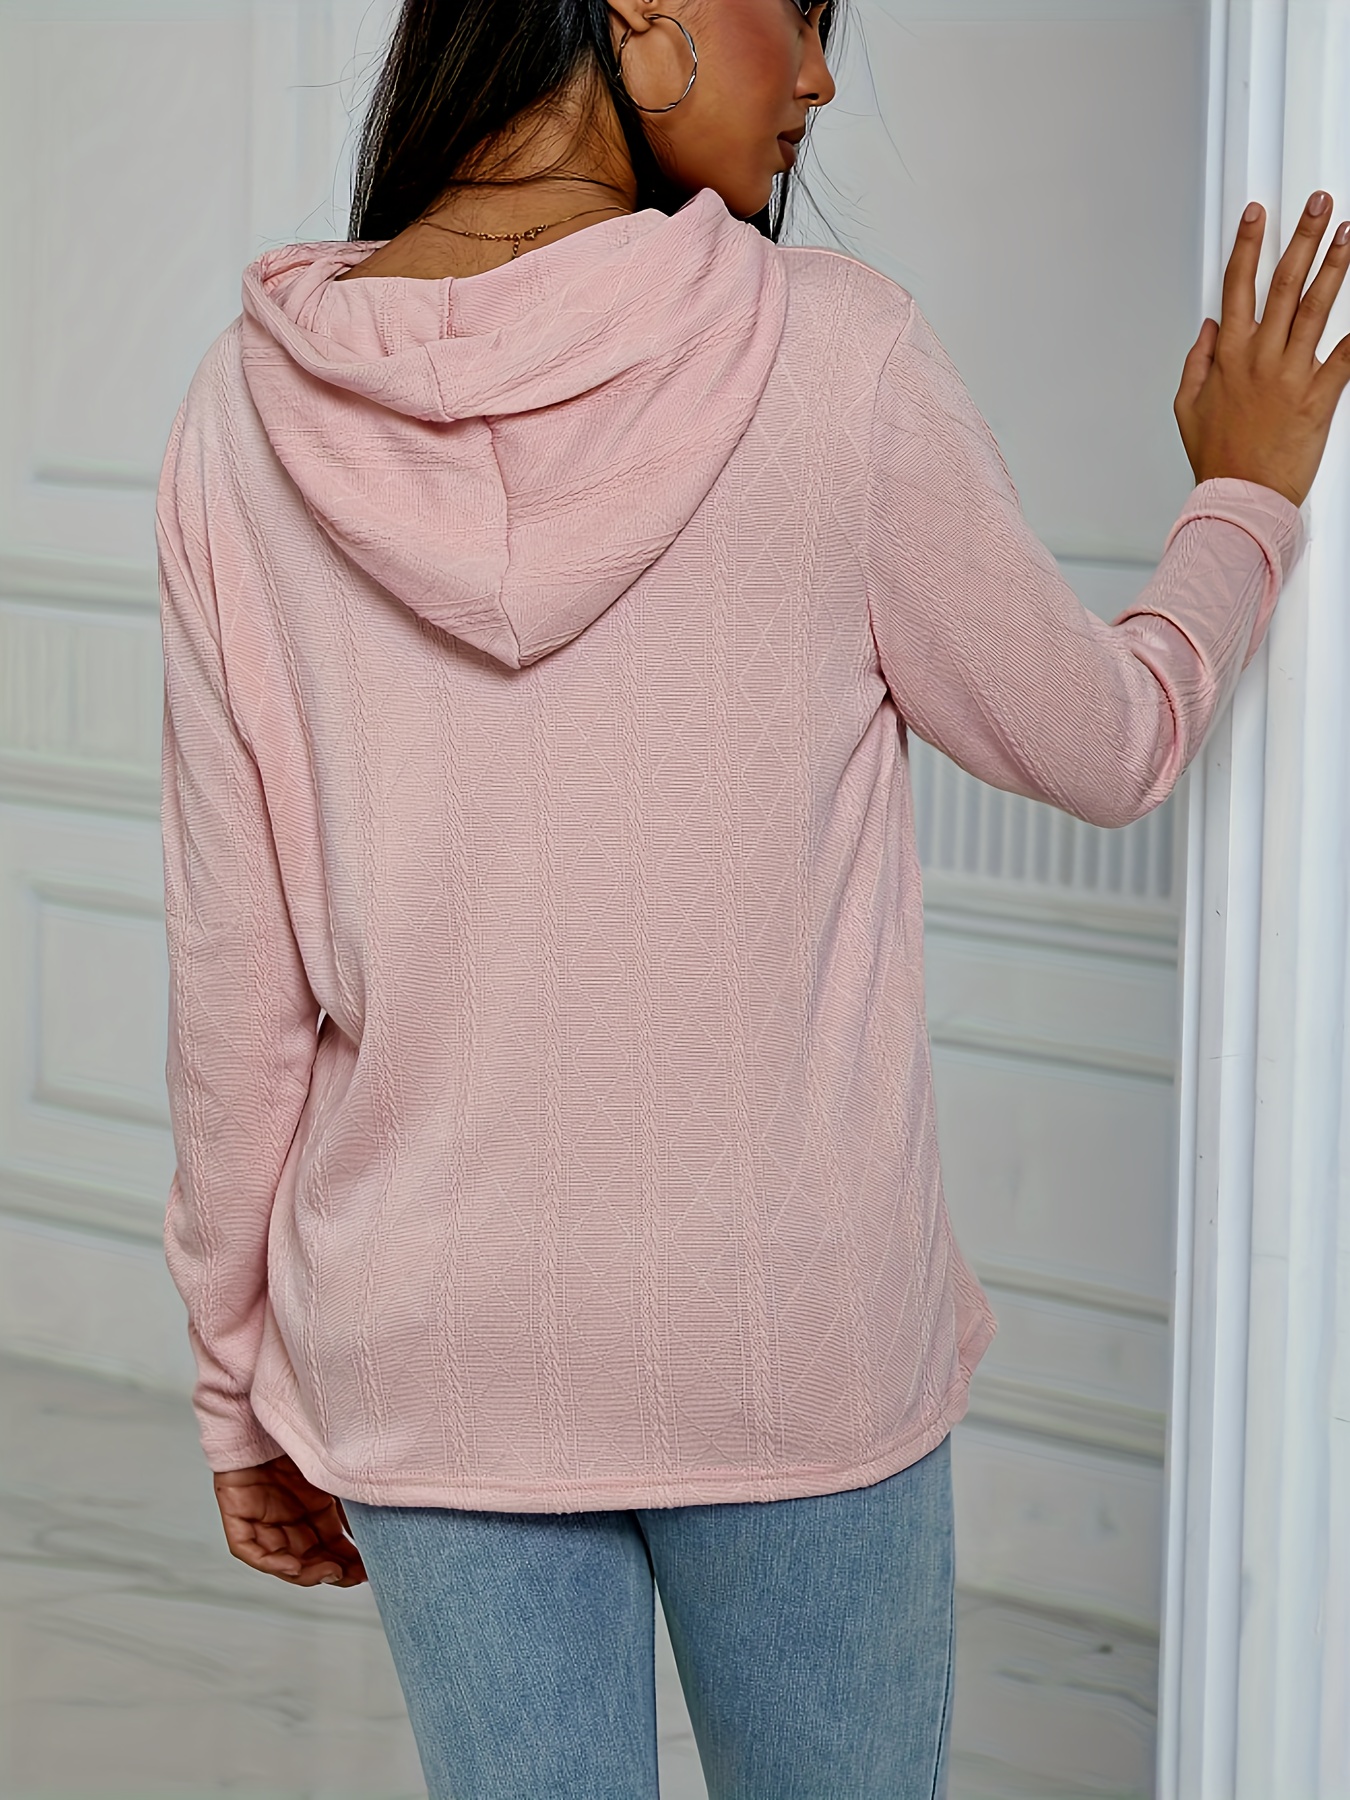 Women's Hoodies & Sweatshirts, Casual & Comfy Yet Stylish